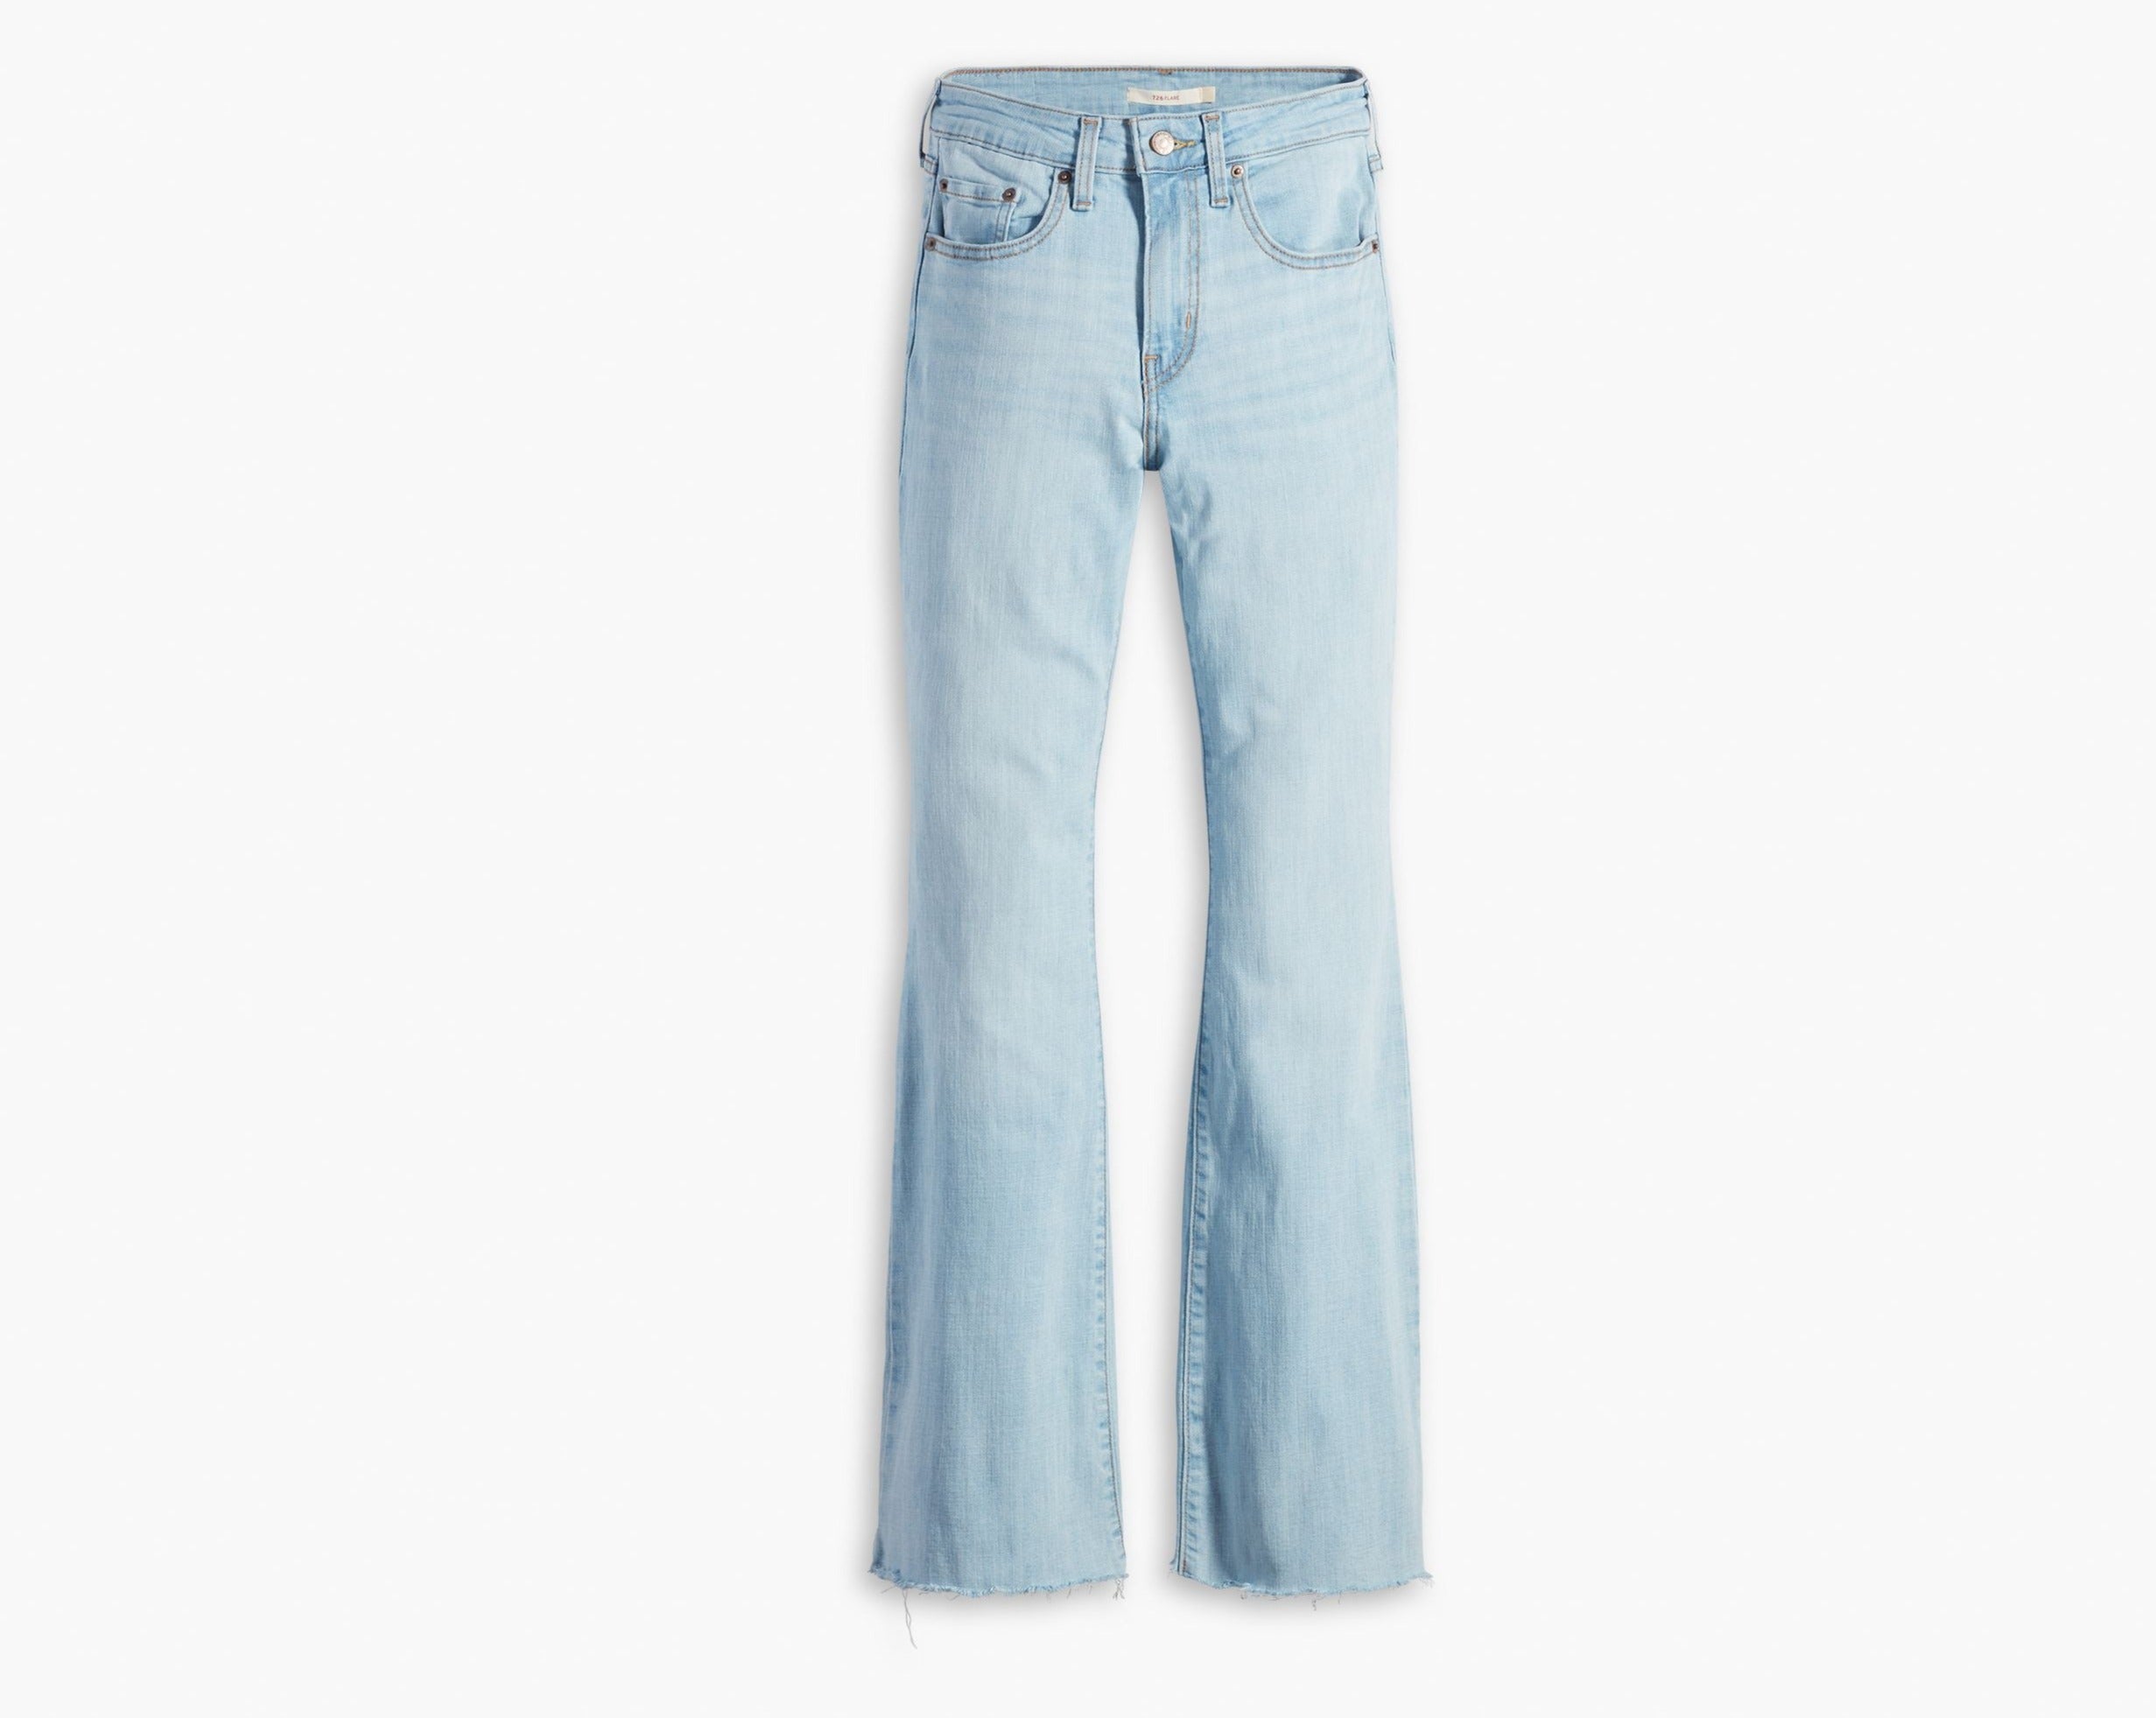 726-jeans-taille-haute-flare-prime-levis-A3410-0011-HIGH-RISE-DENIM-FLARE-WOMEN-LEVIS-DM2-SHOP-06